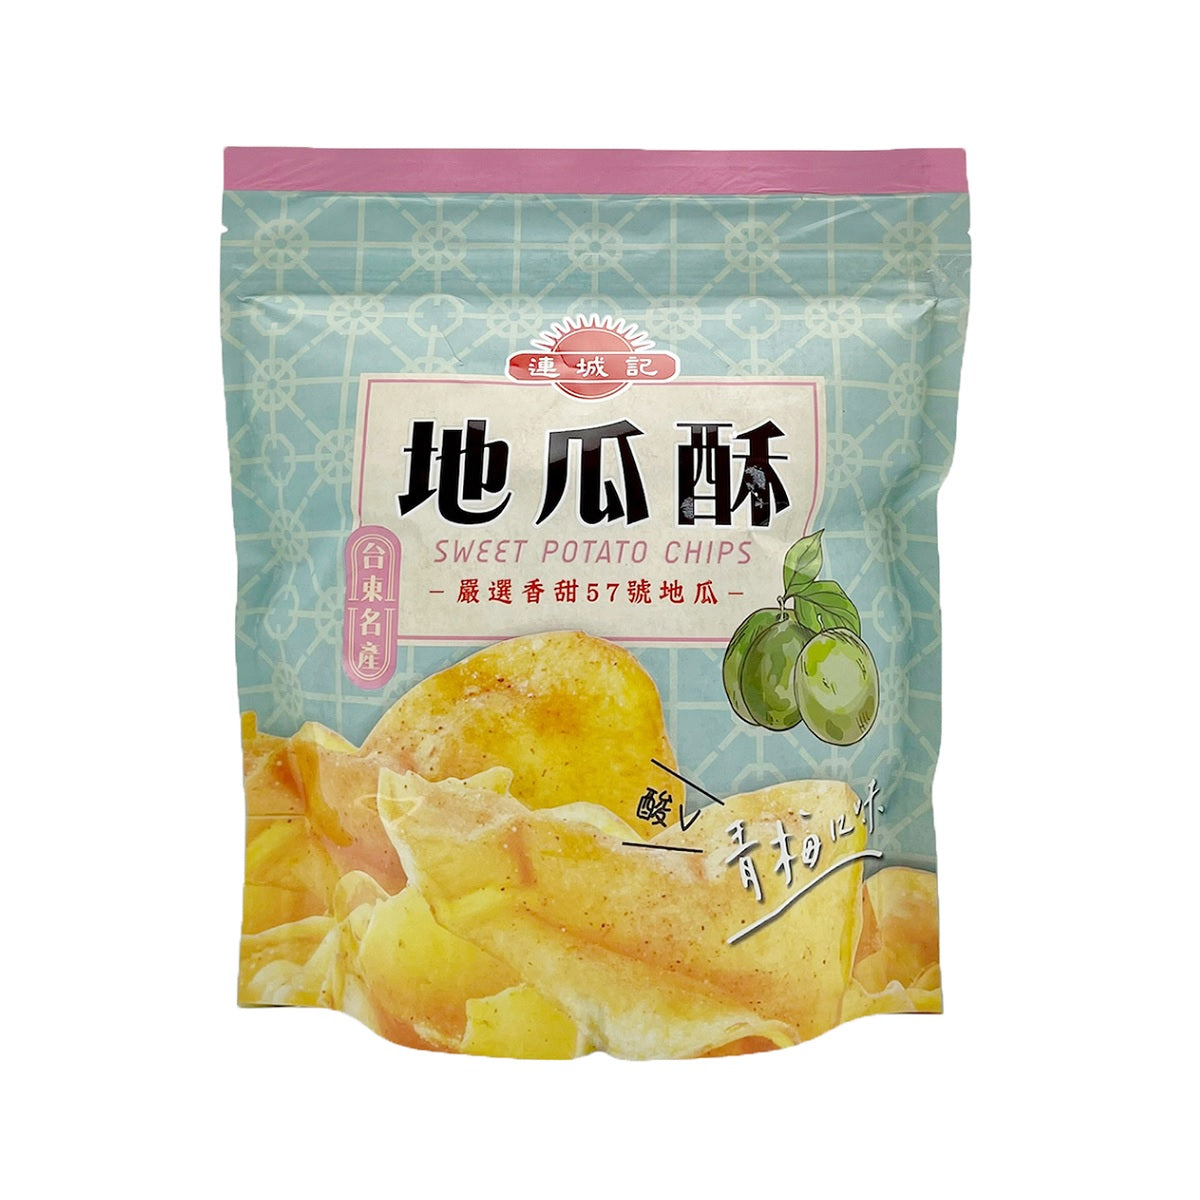 【LIANCHENG】 Plum Flavor Sweet Potato Chips 140g